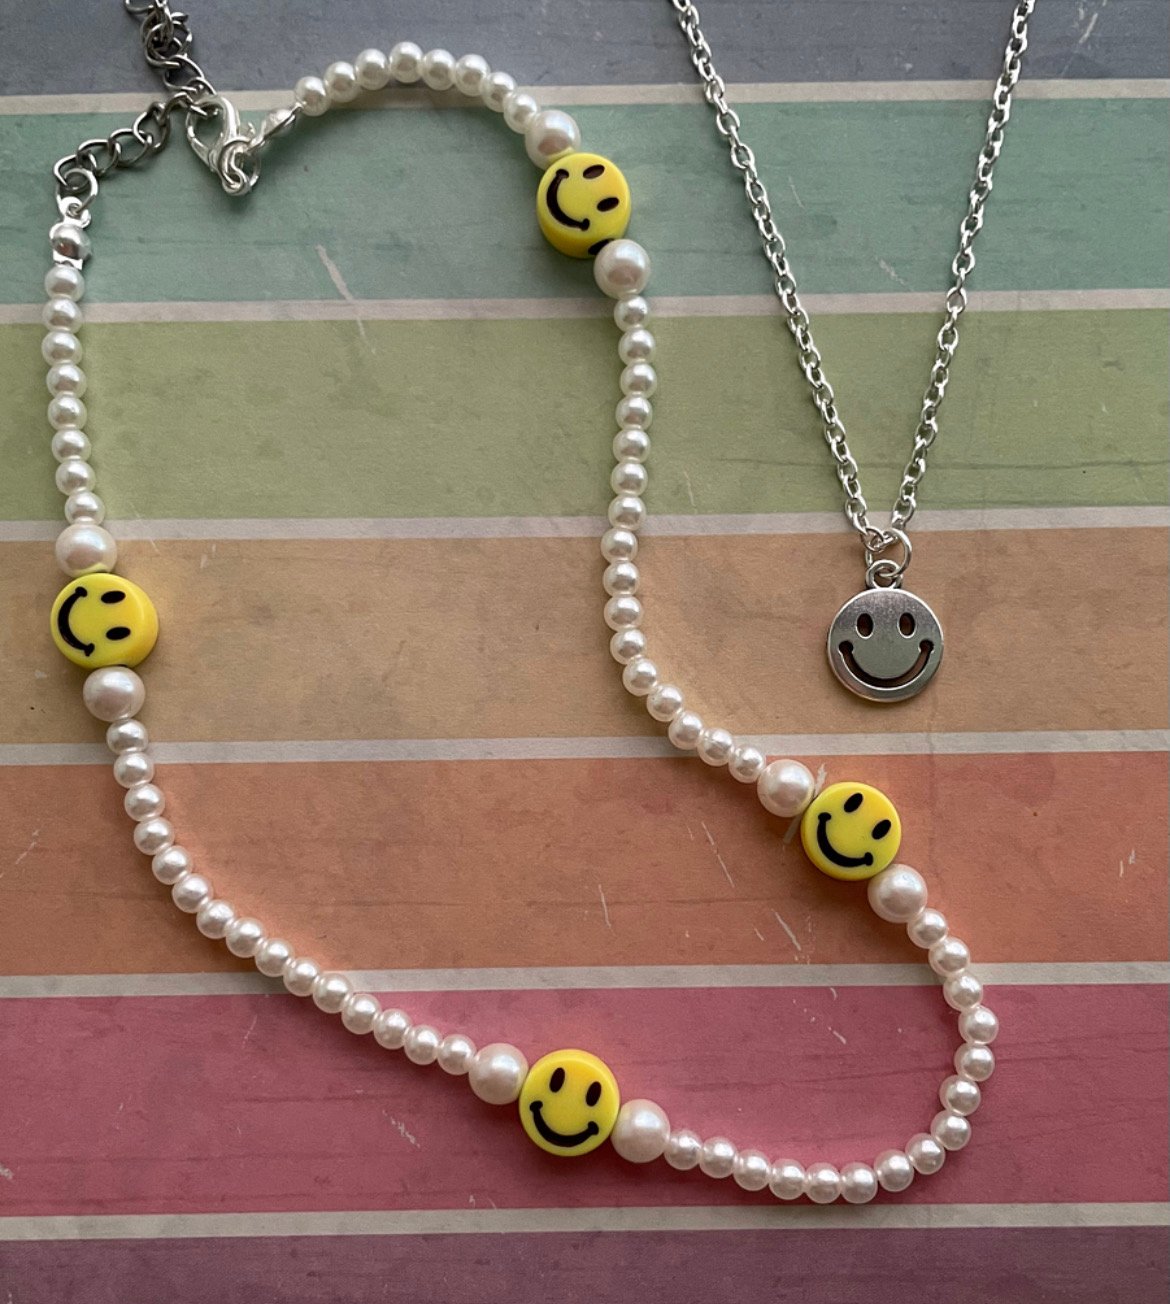 AESPA] Ningning / DETAILING/ beaded necklace / rantai aespa / rantai  ningning / smiley face necklace / aespa | Shopee Malaysia